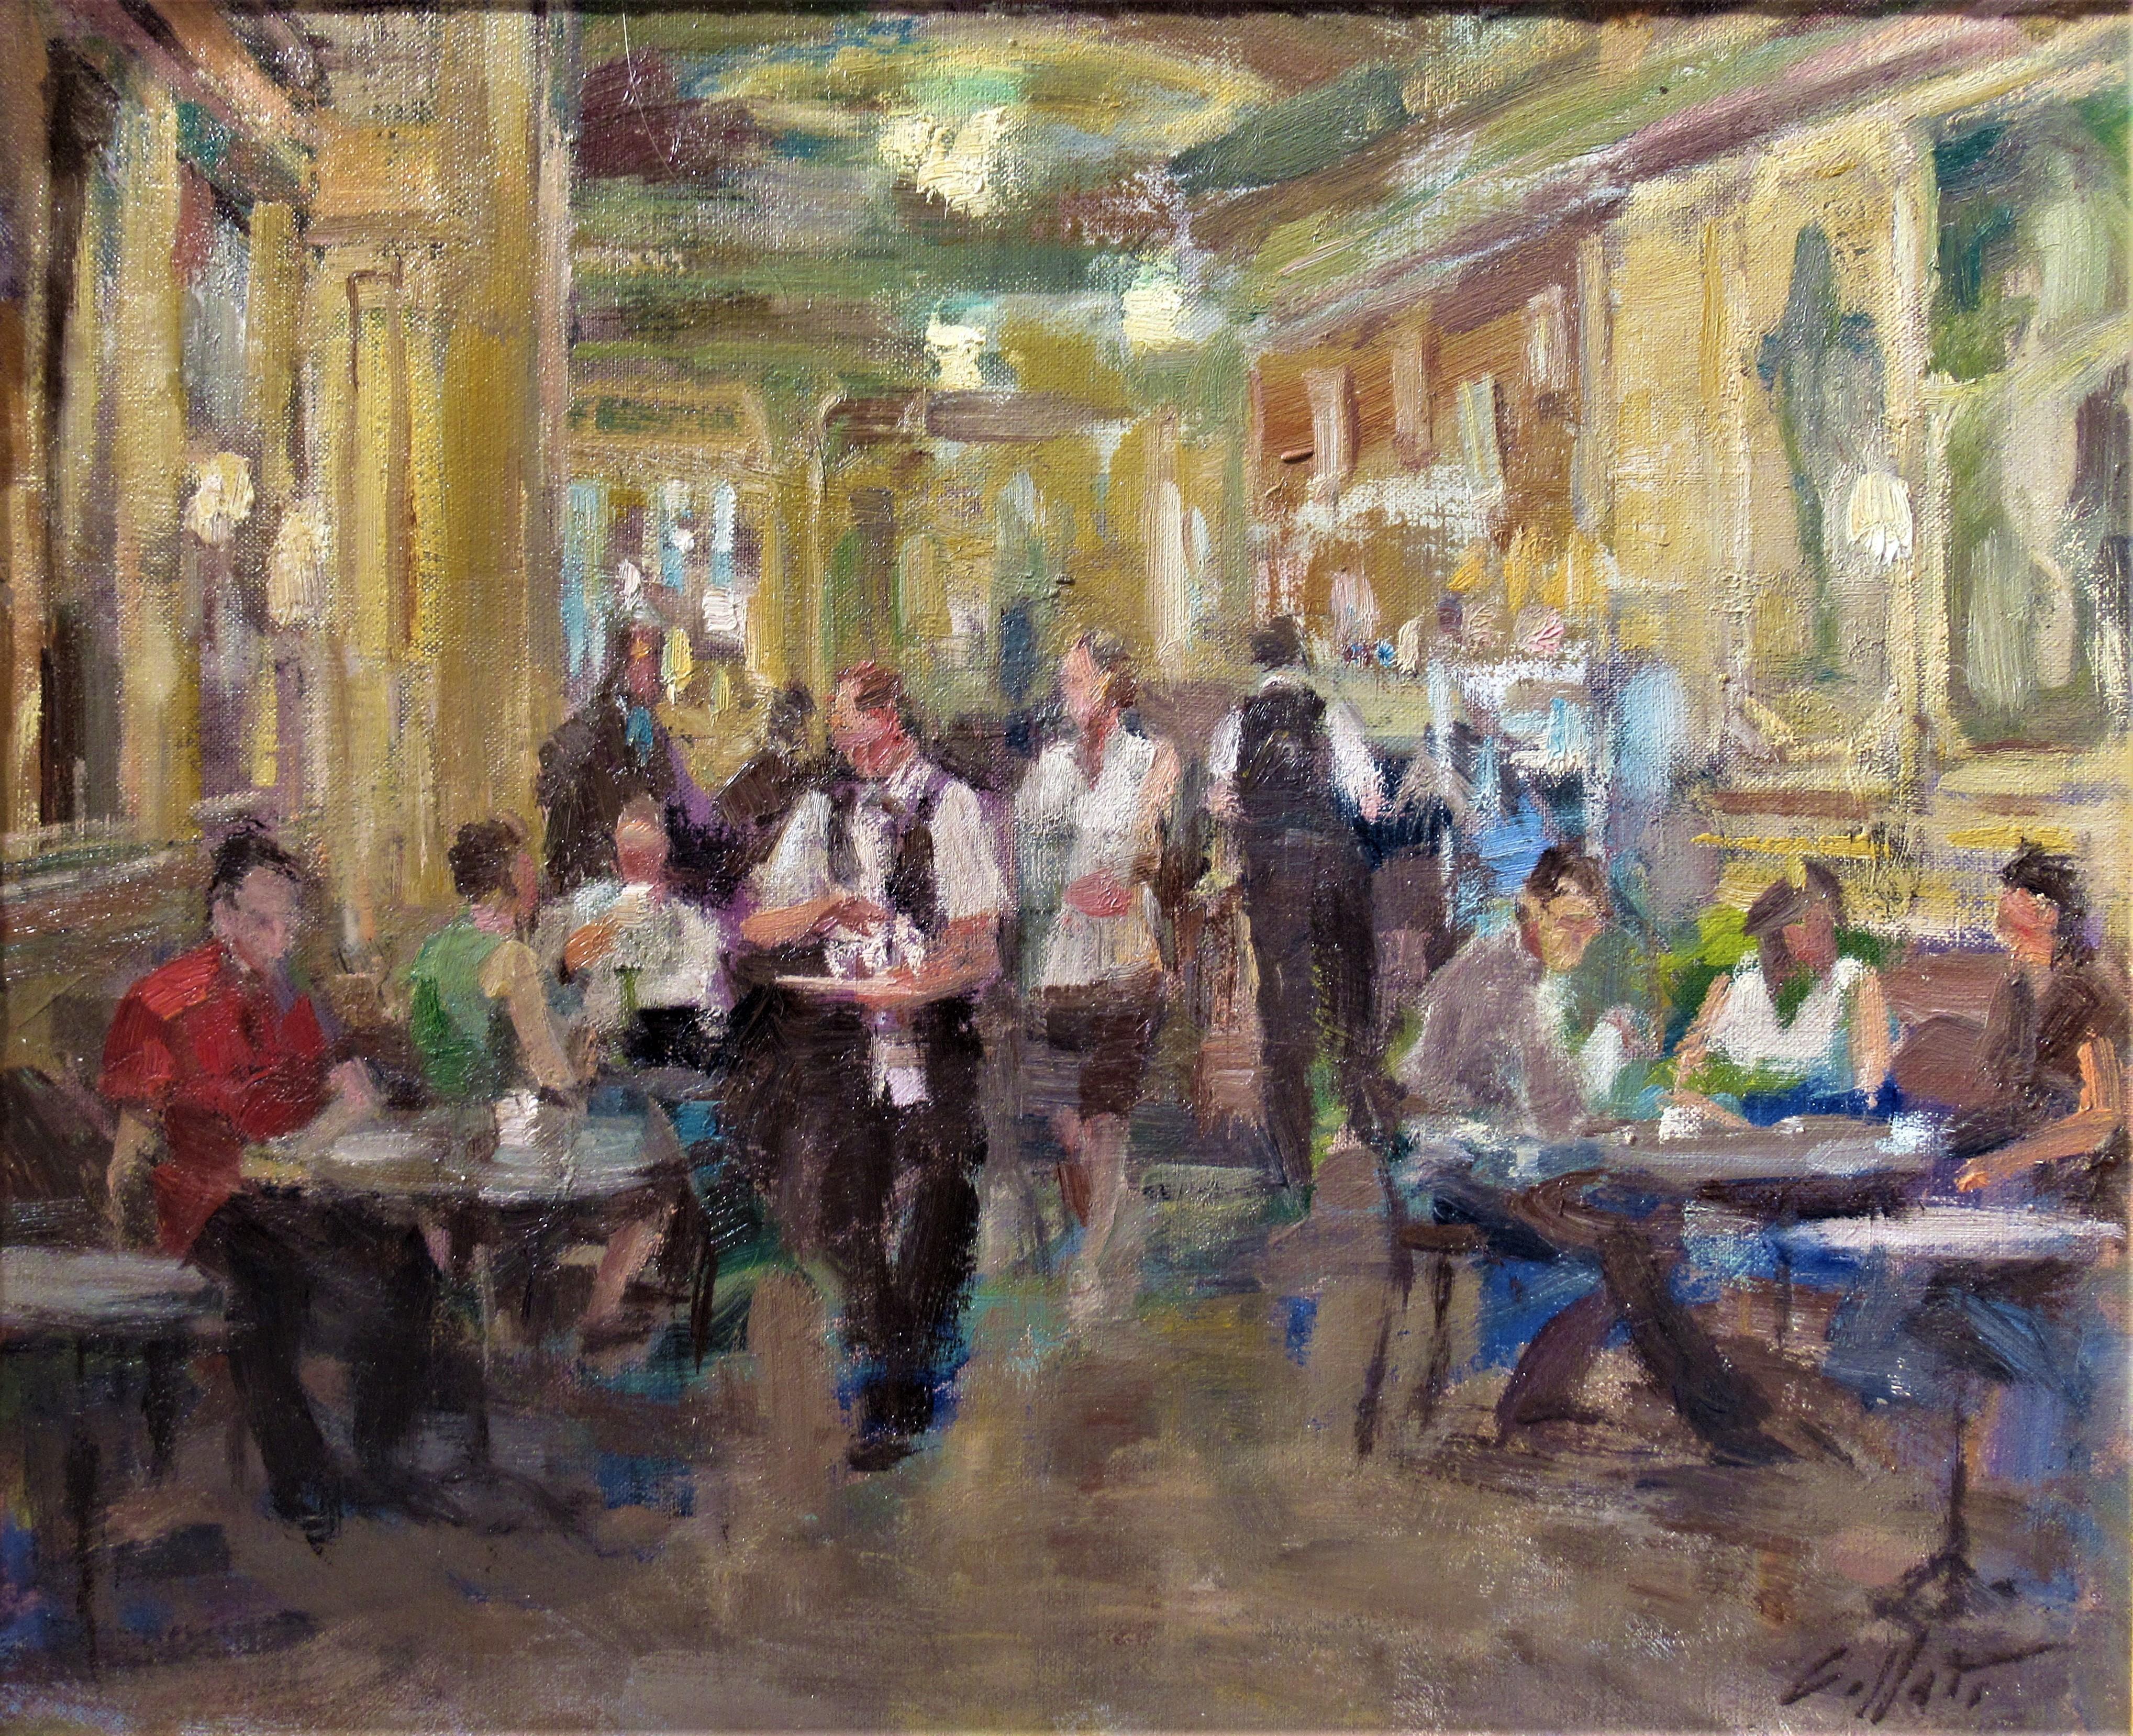 Cafe Lopez, Barcelona - Painting by Juan Collado Y Anton